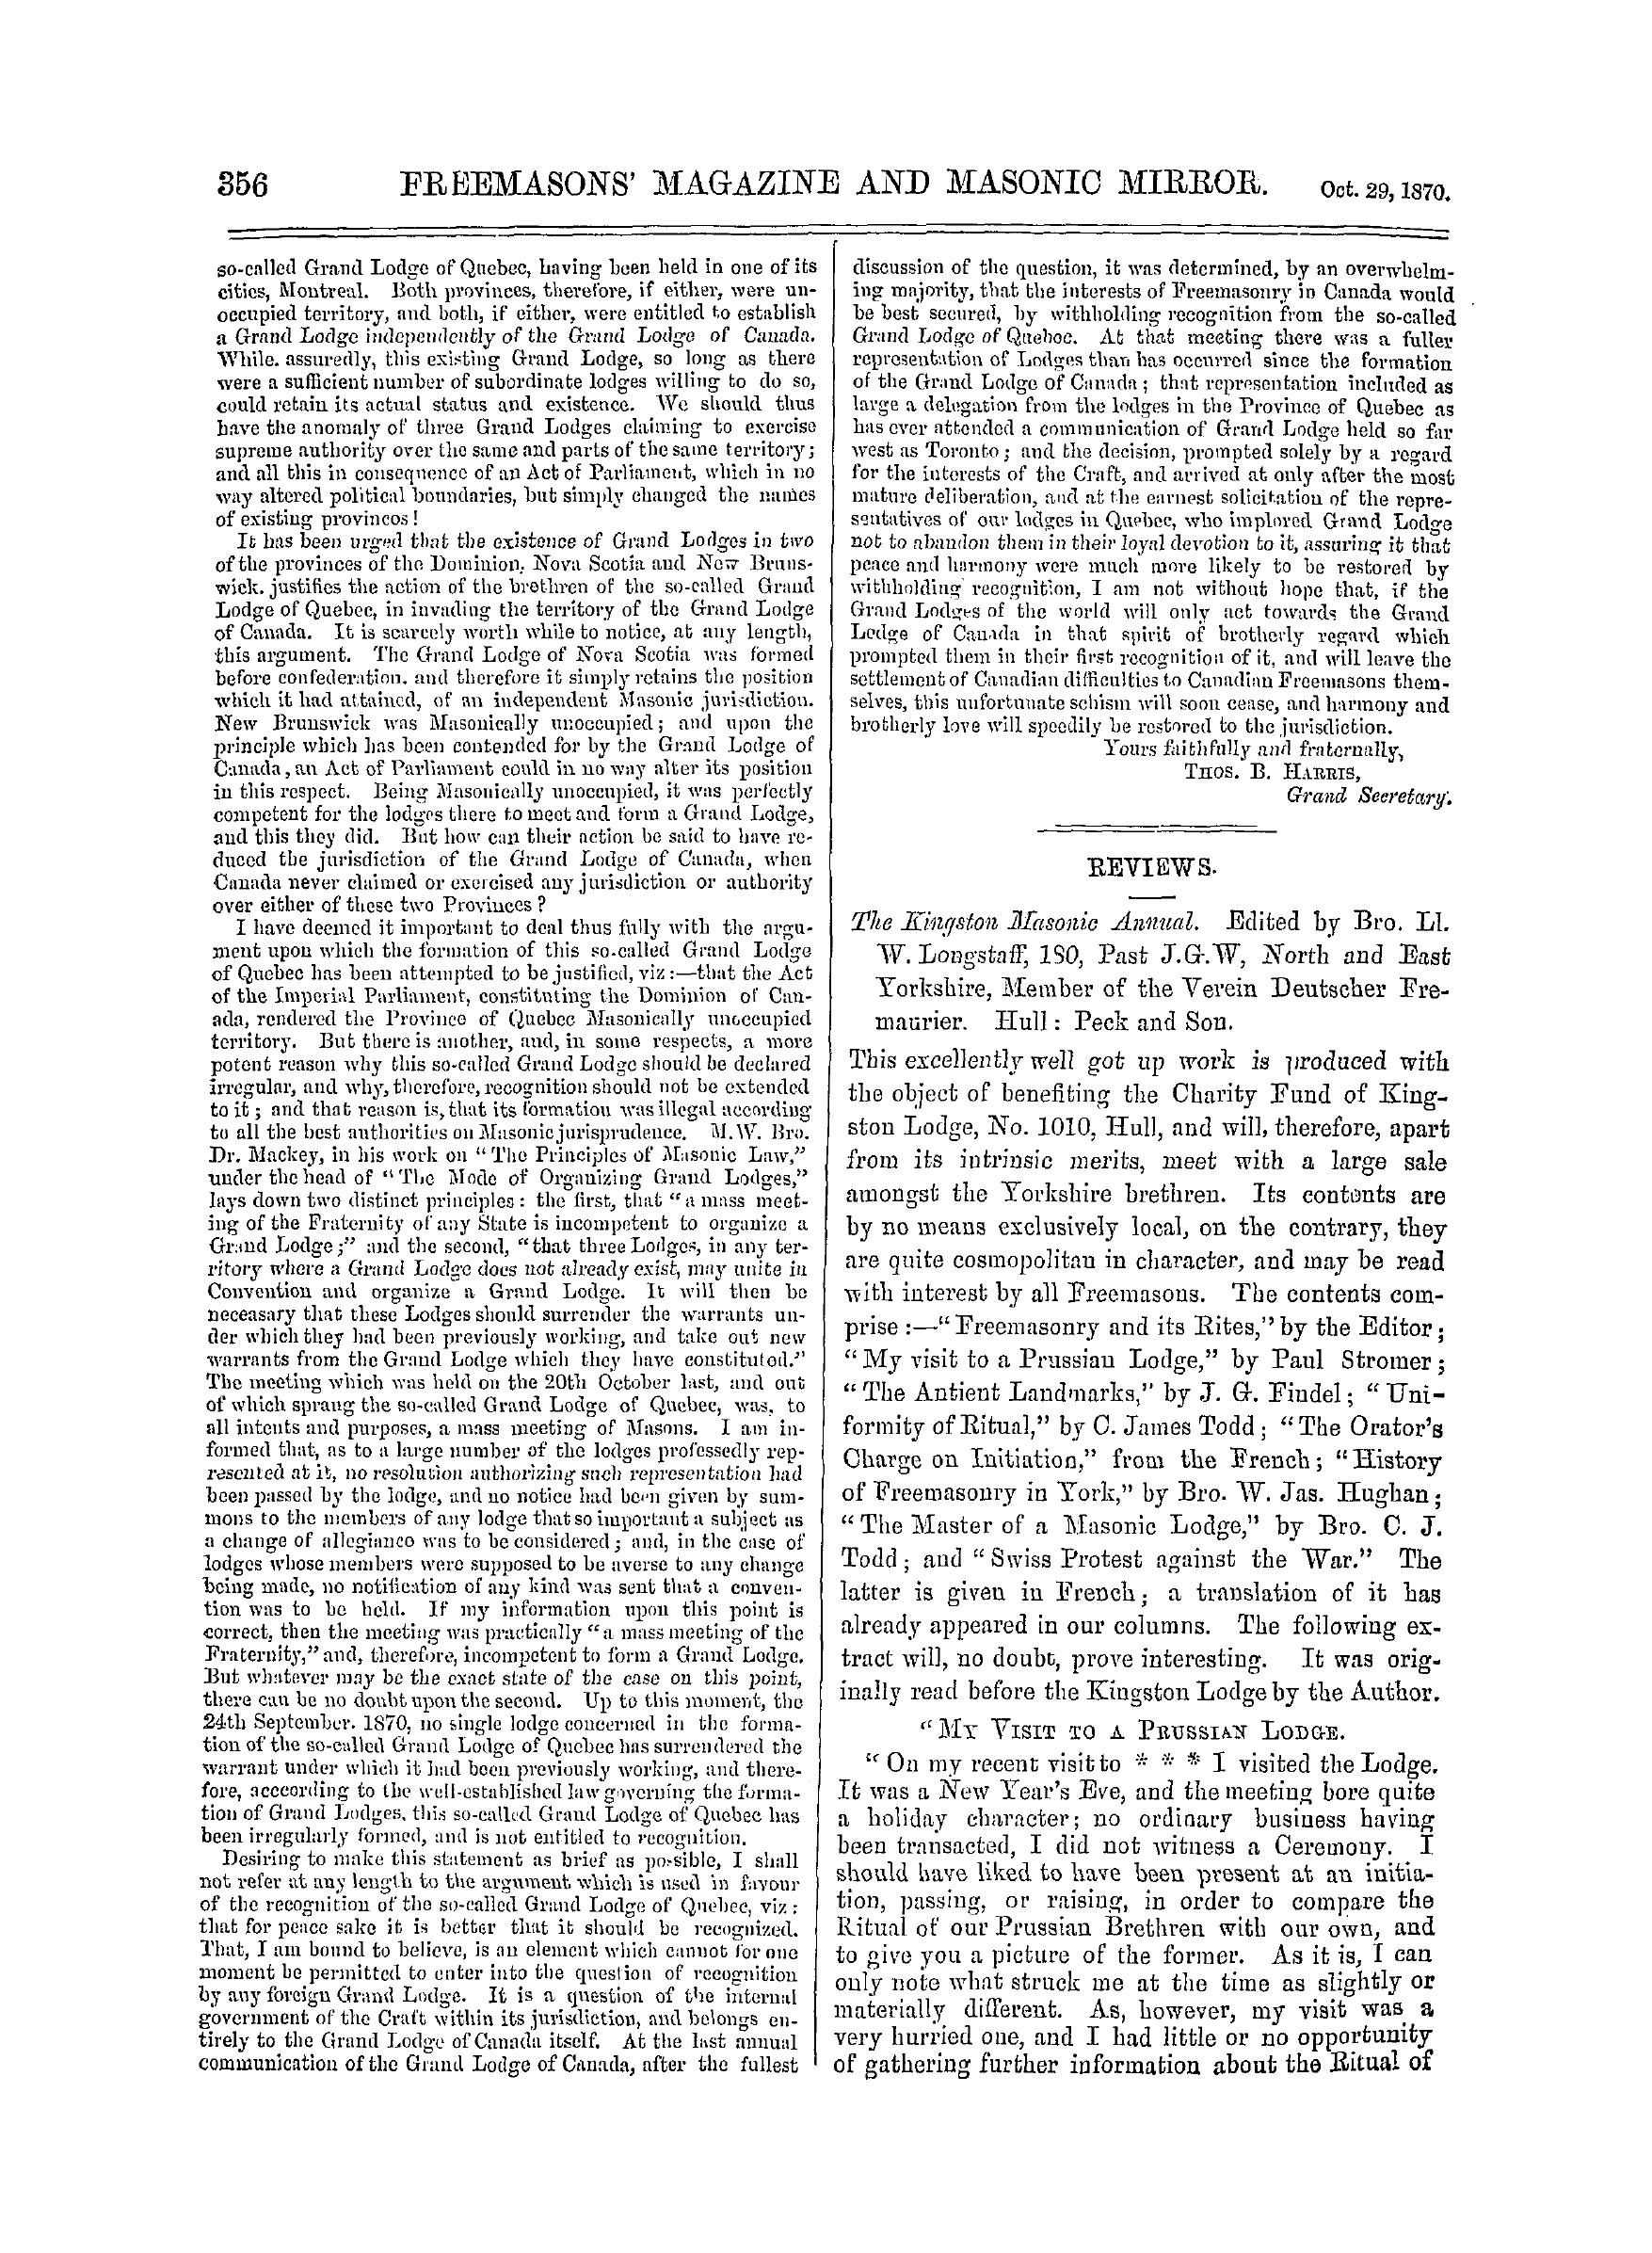 The Freemasons' Monthly Magazine: 1870-10-29: 16